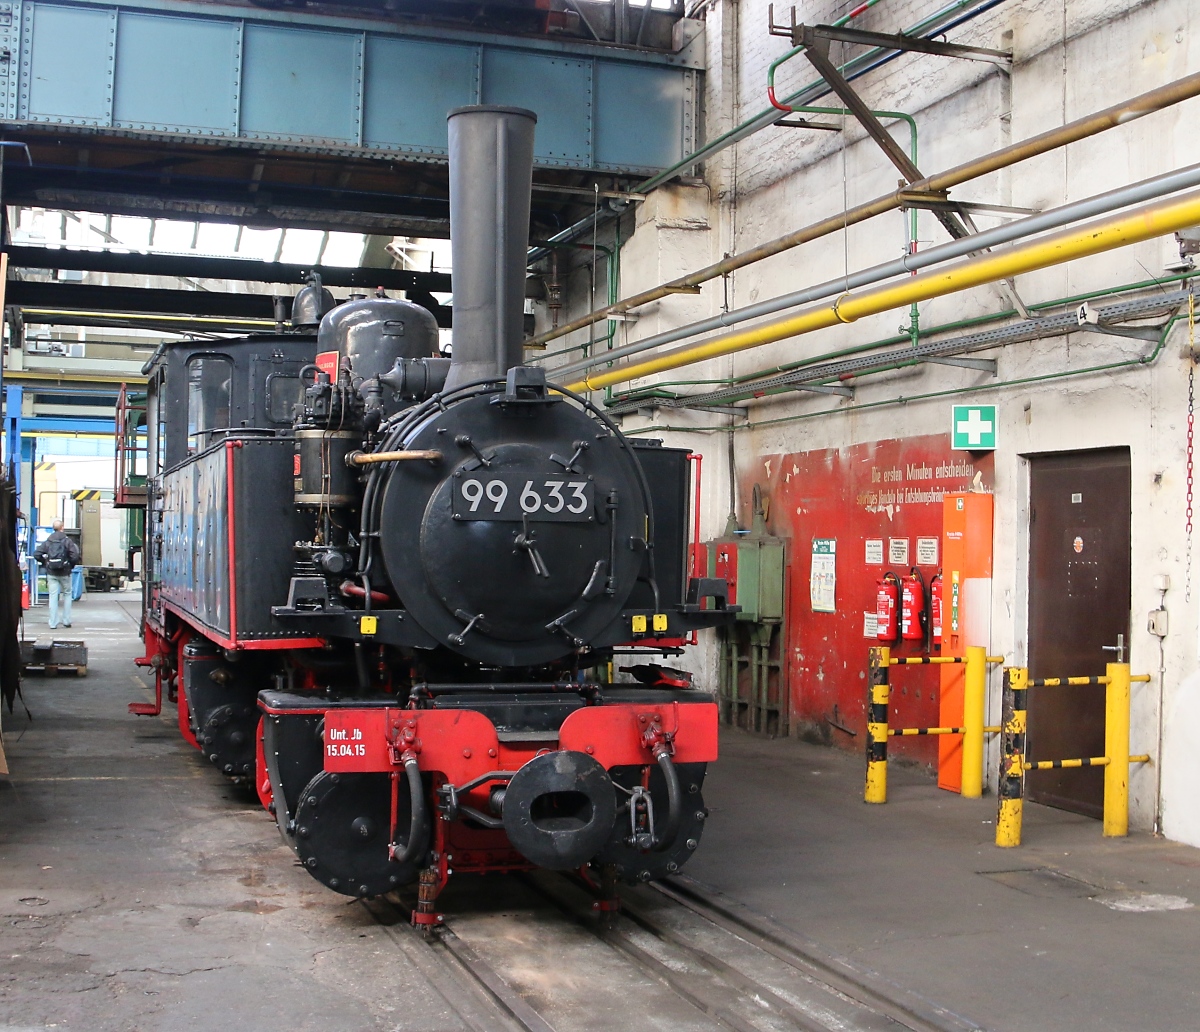 Mein 6000. Bild zeigt das Öchsle 99 633, bekannt aus dem Vorspann der Sendung  Eisenbahn-Romantik . Sie stand am 03.11.2018 im Dampflokwerk Meiningen, welches wir im Rahmen einer Sonderfahrt besucht hatten.